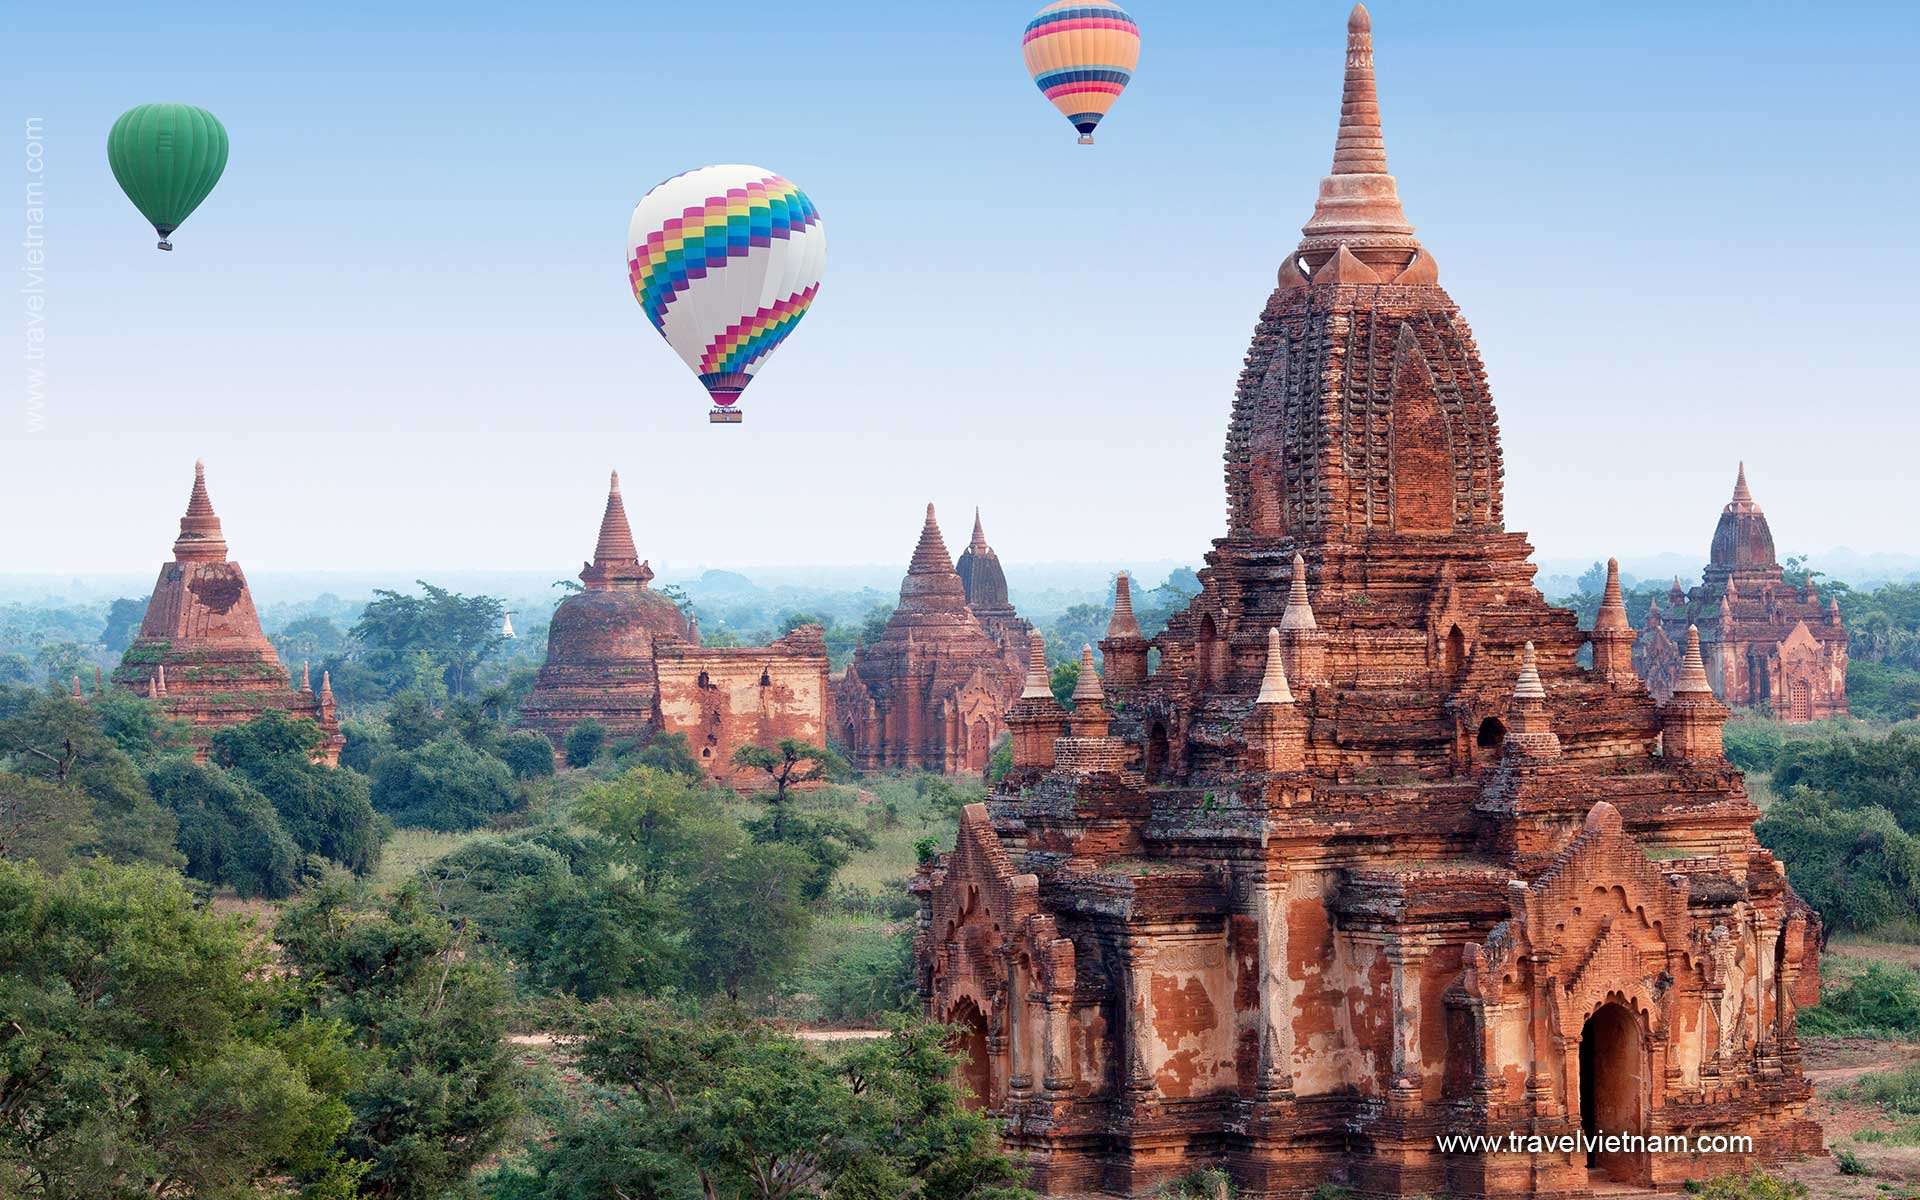 From Angkor Wat to Bagan - 12 Days